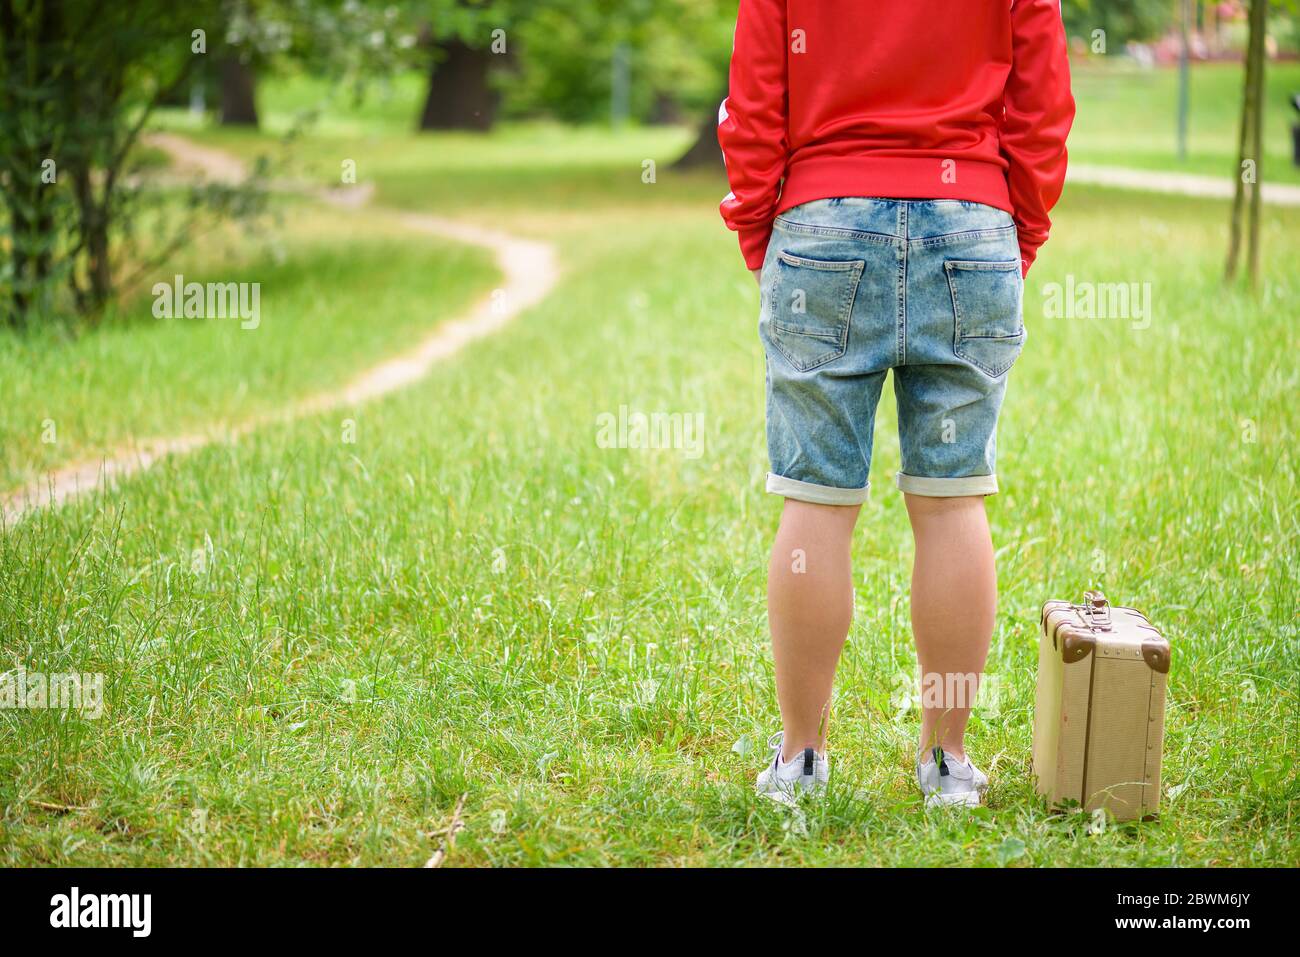 Junge Person steht mit einem Vintage-Koffer. Foto von hinten. Lokales Reisekonzept Stockfoto